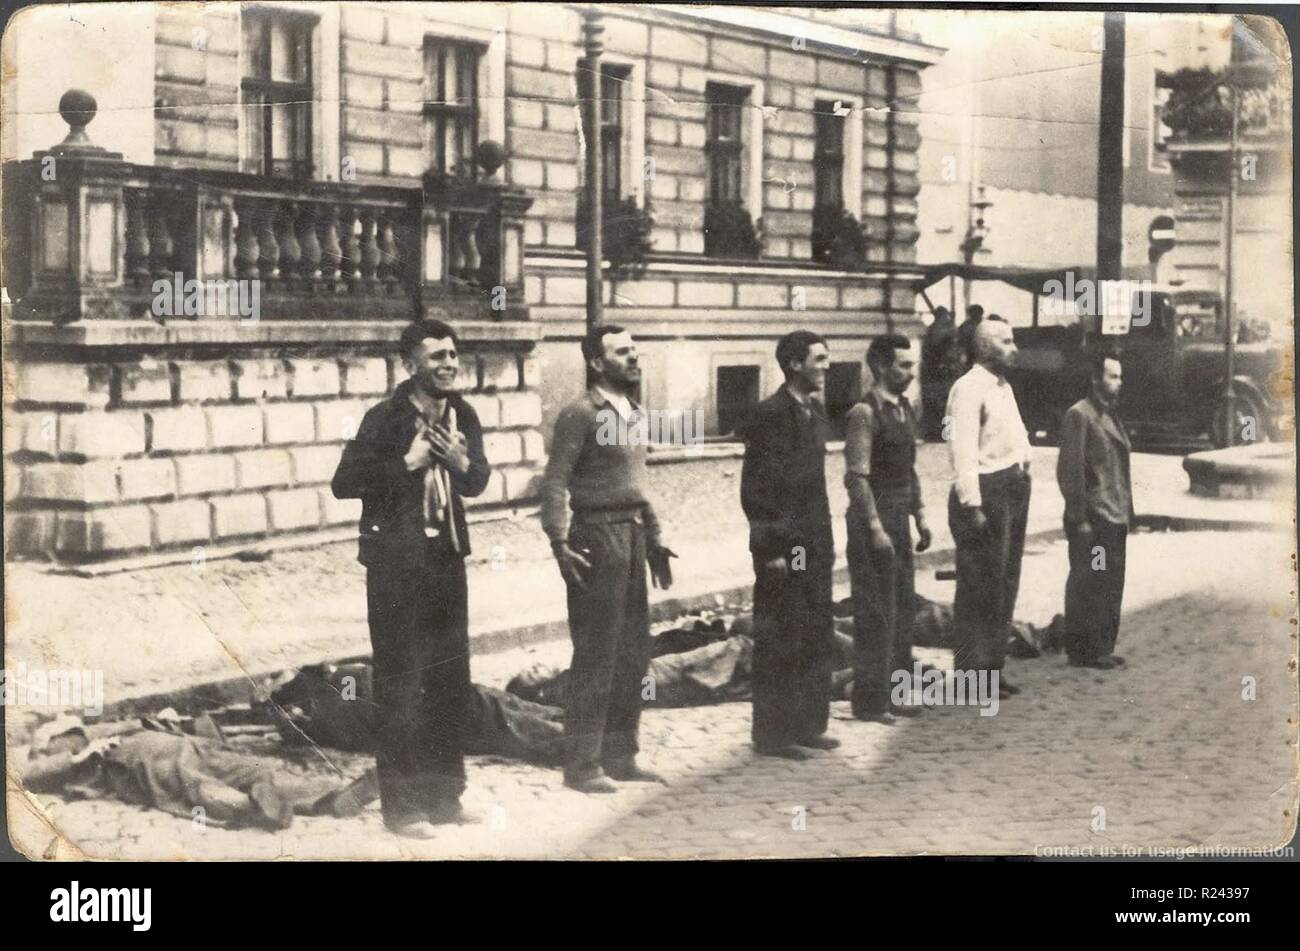 Face à la mort les différentes expressions de six civils polonais quelques instants avant la mort par peloton d'exécution, après l'invasion nazie de la Pologne au début de la seconde guerre mondiale, 1939 Banque D'Images